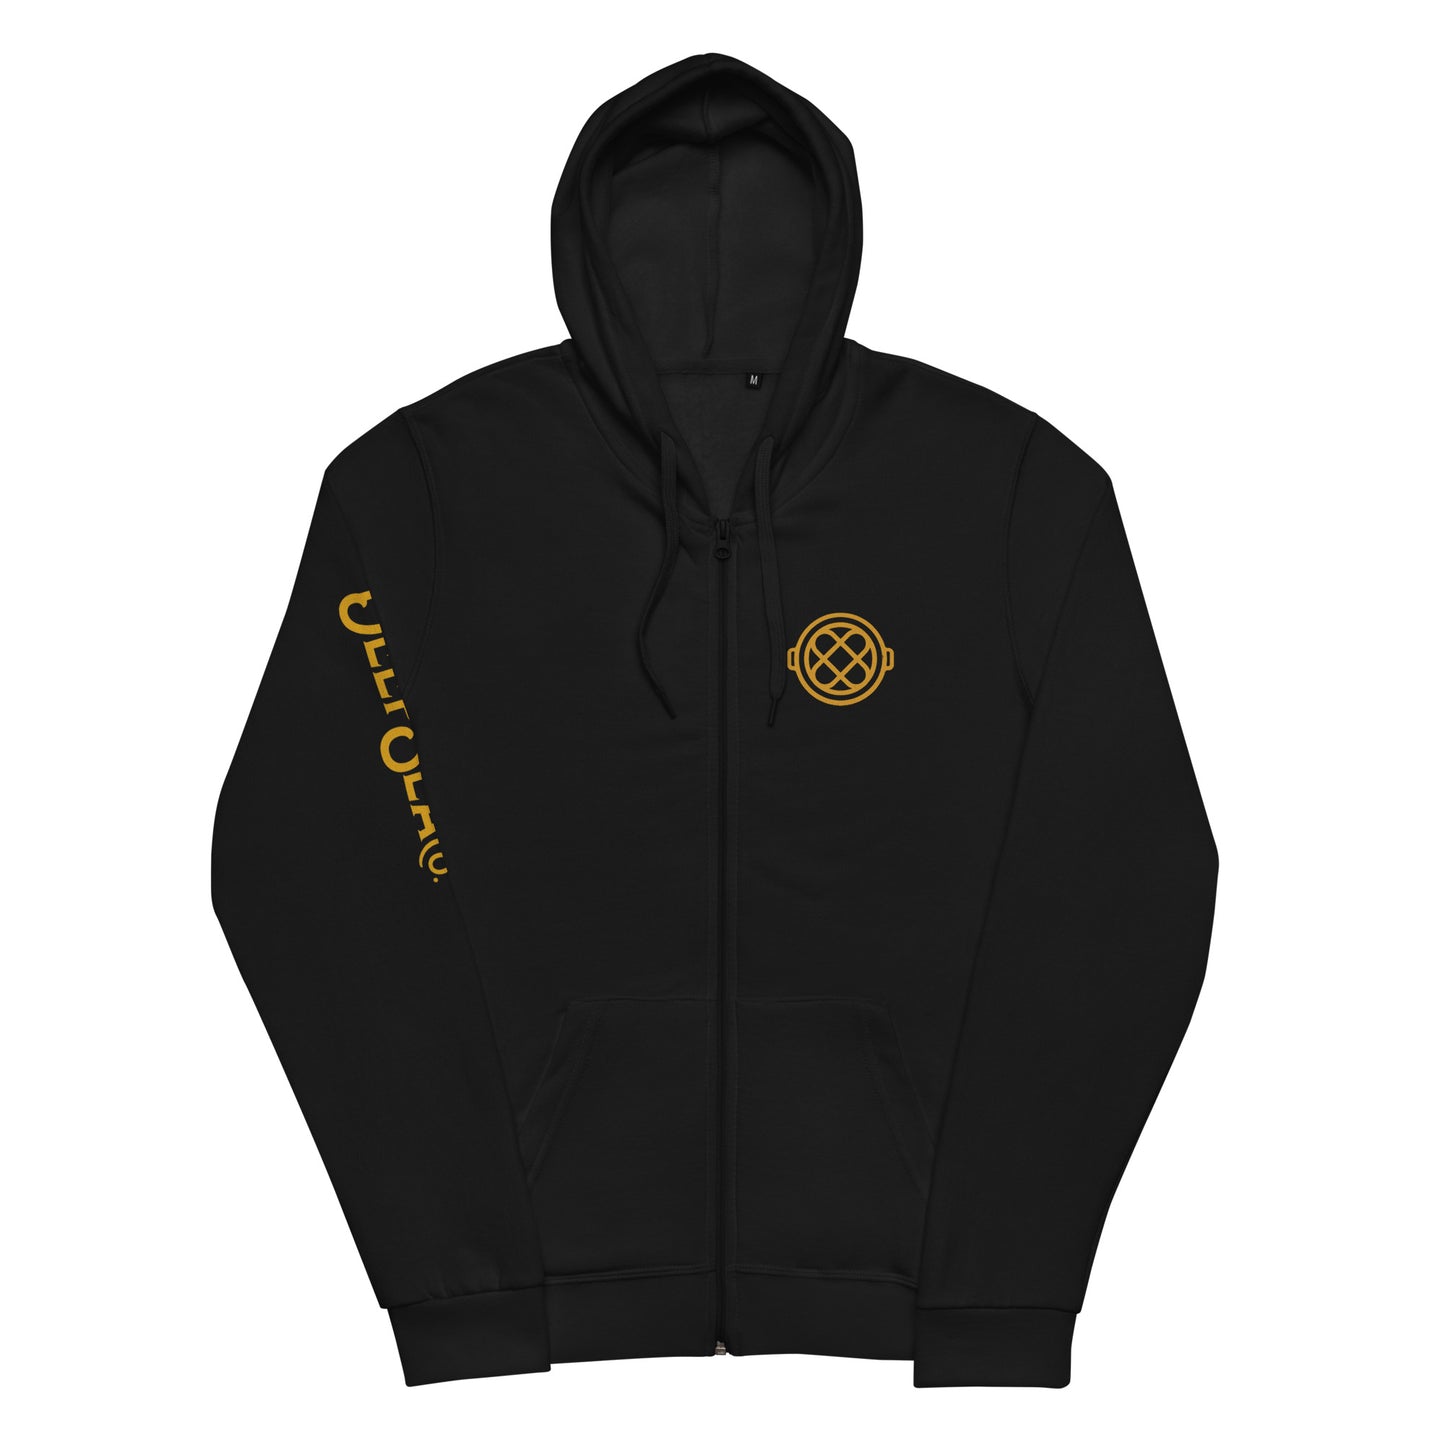 DeepSea Explorer Unisex basic zip hoodie